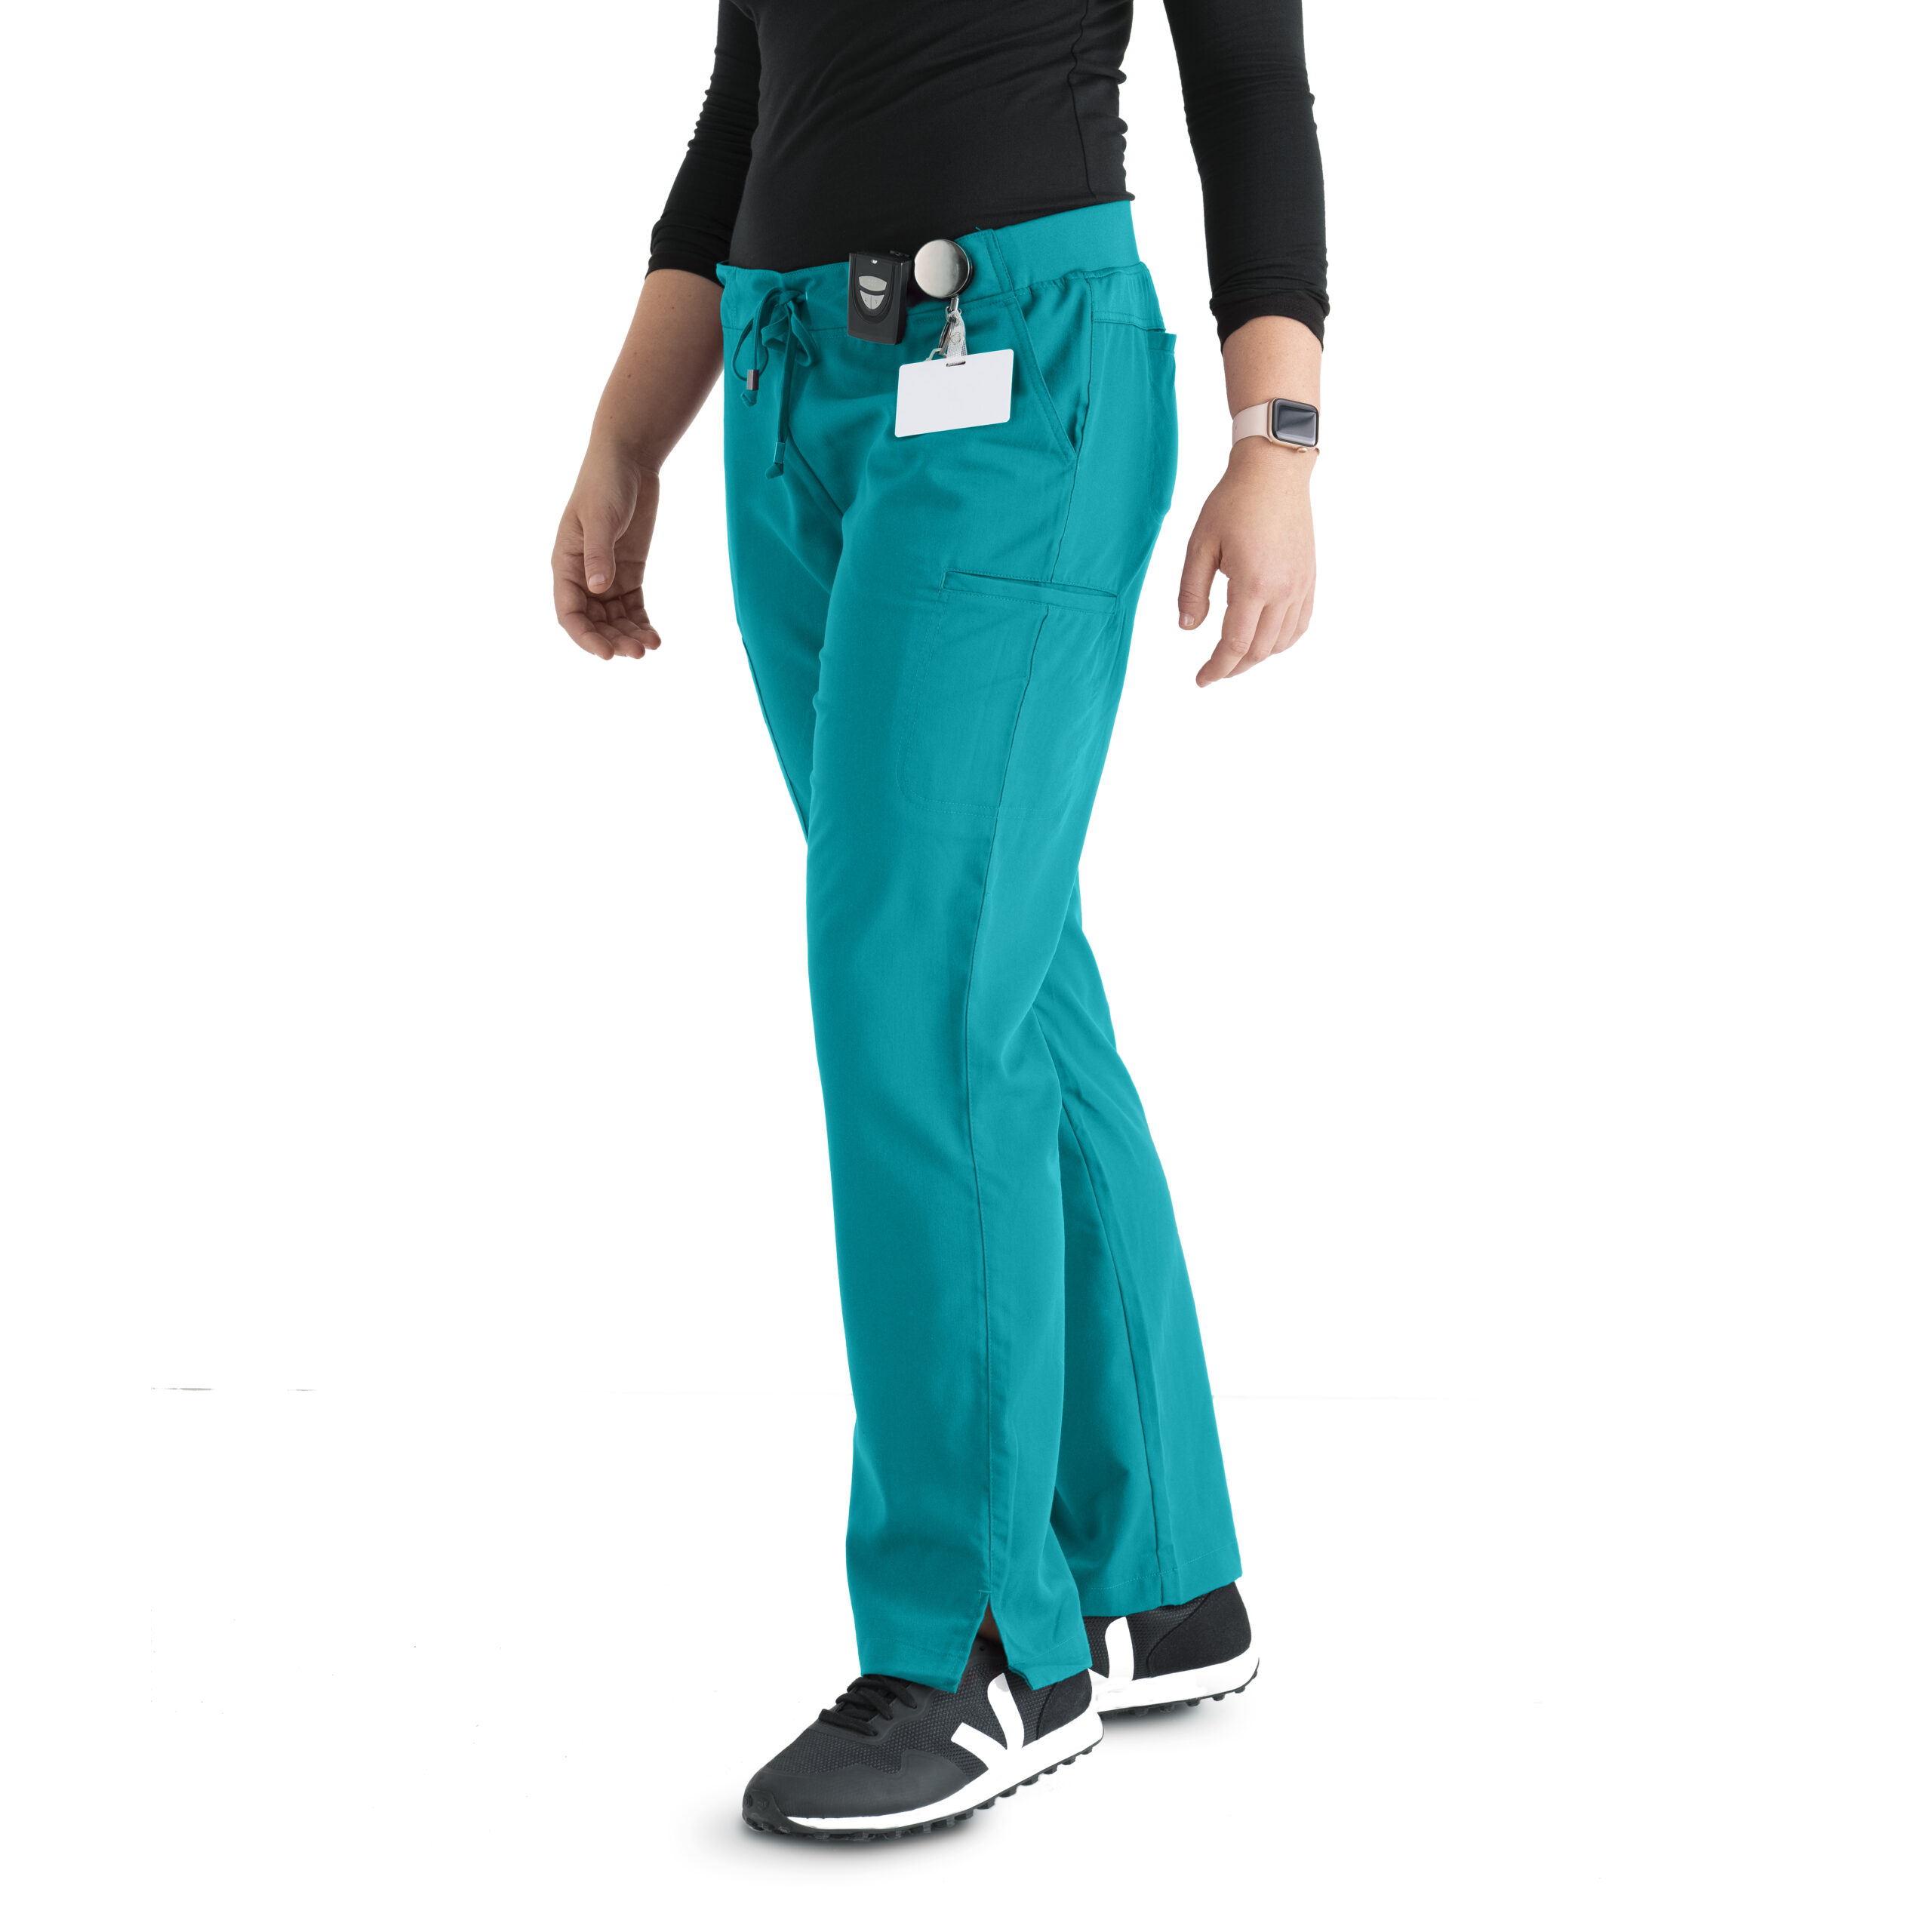 Grey's Anatomy Classic Mia Scrub Pant - 6 Pocket Scrub Pants in